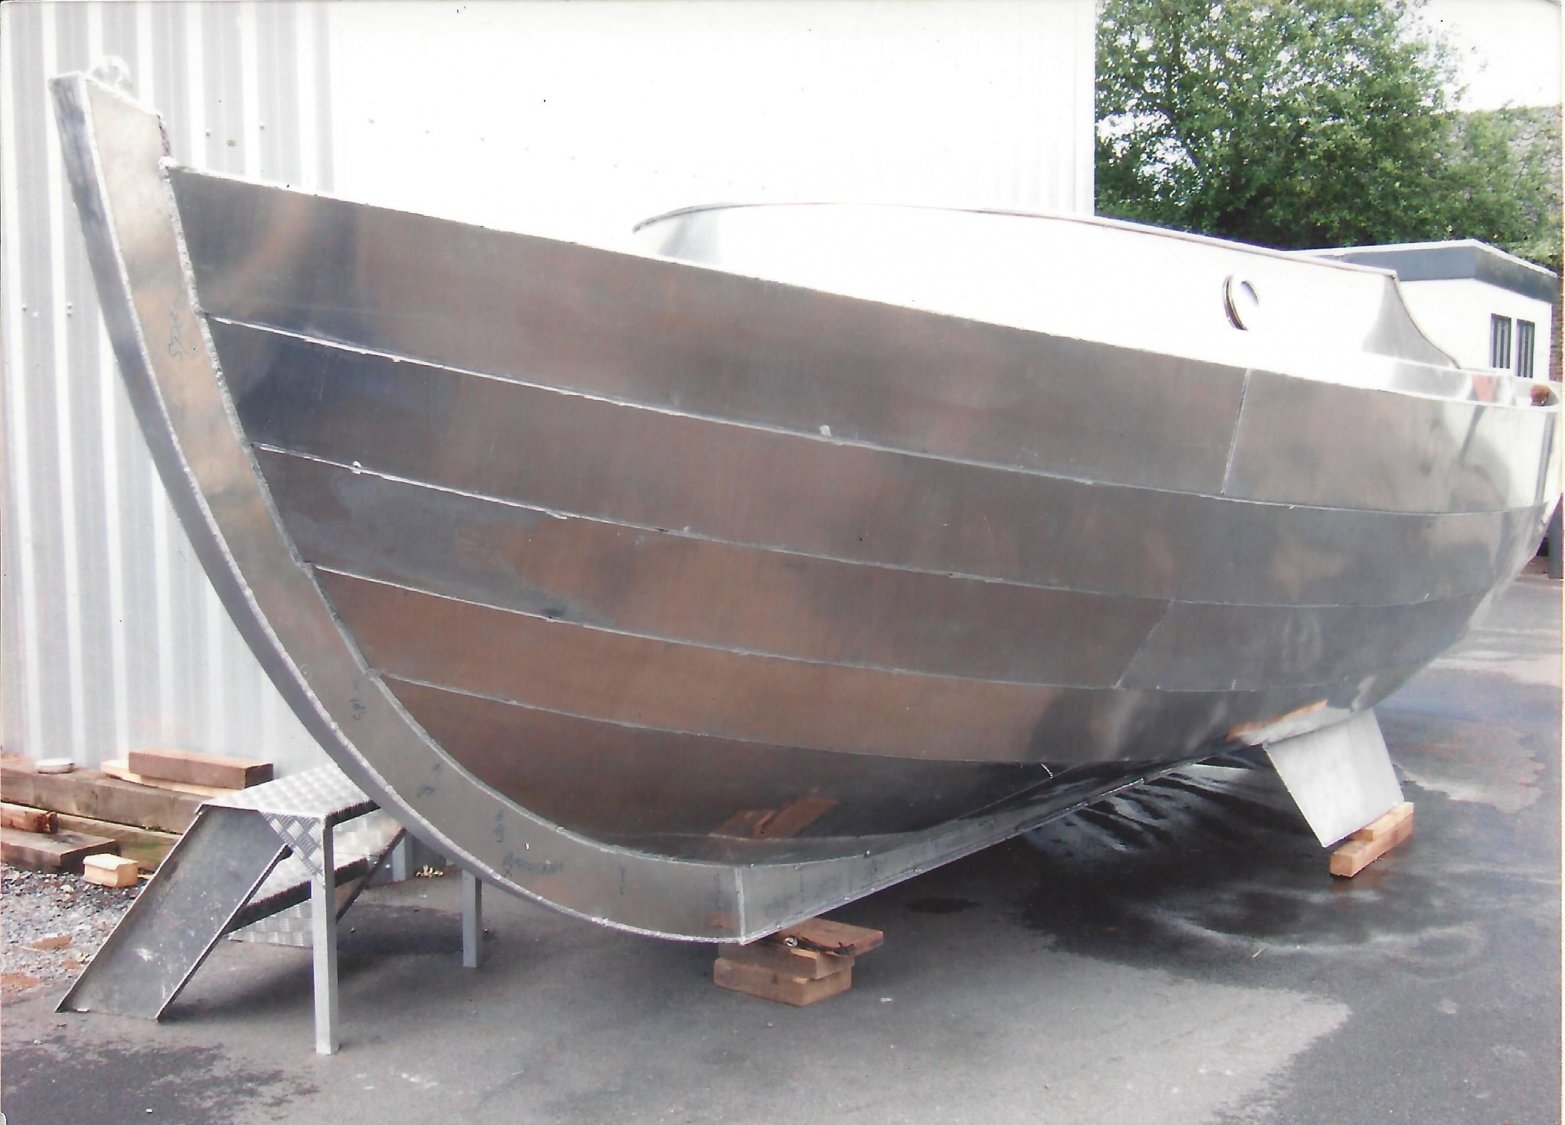 Aluminium Sloep MLV koop | Wehmeyer Yacht